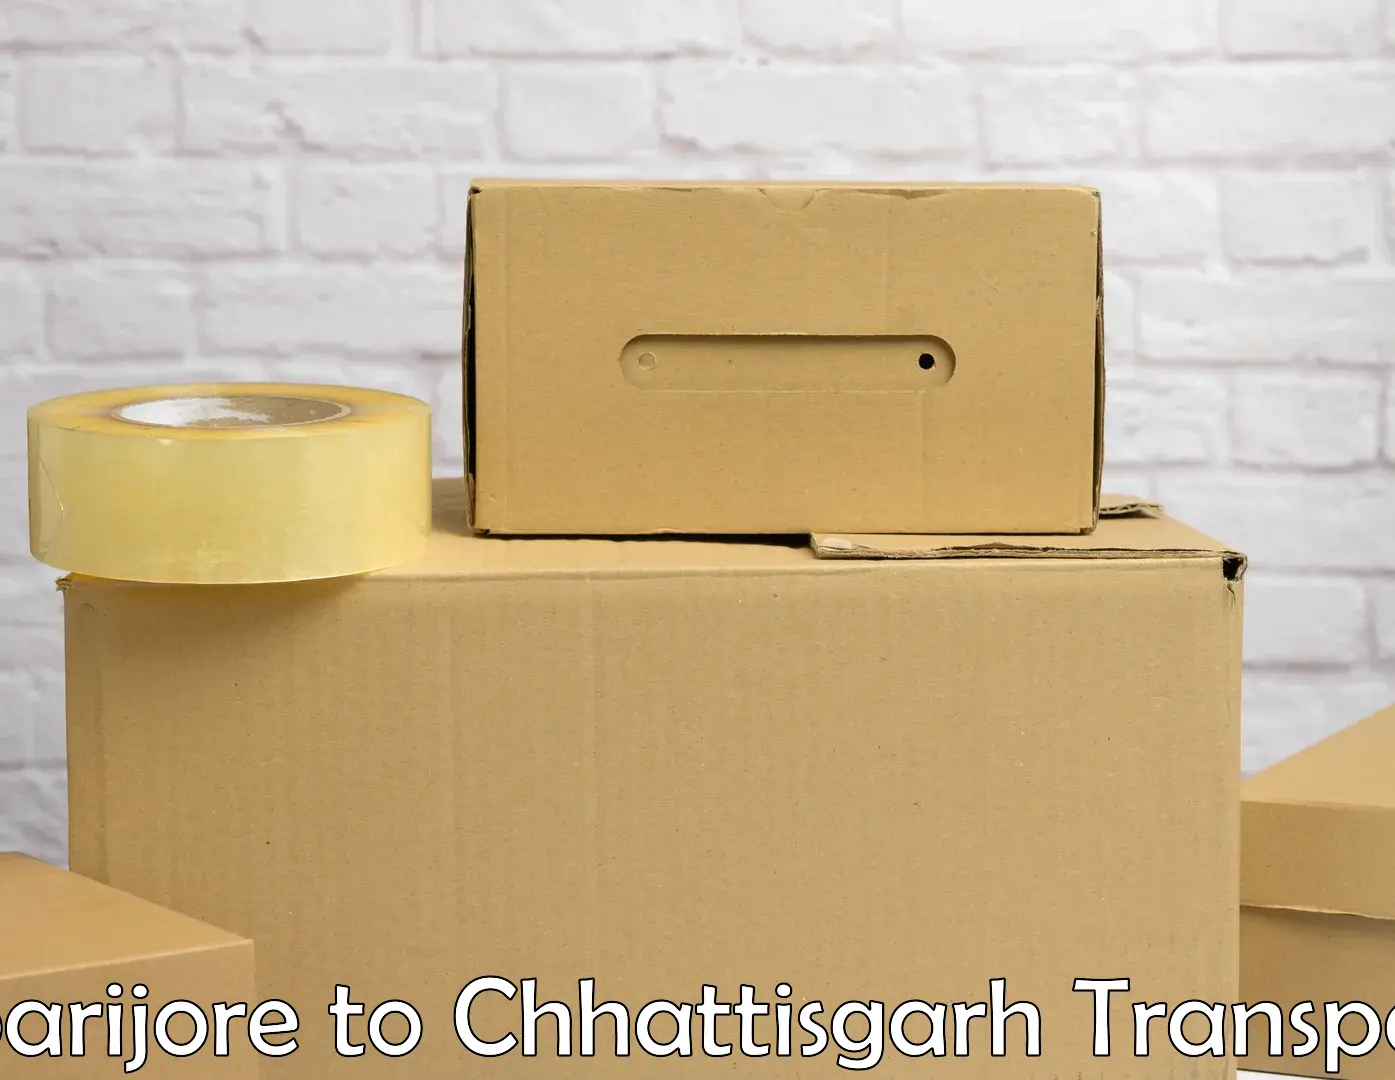 Transport shared services Boarijore to Chhattisgarh